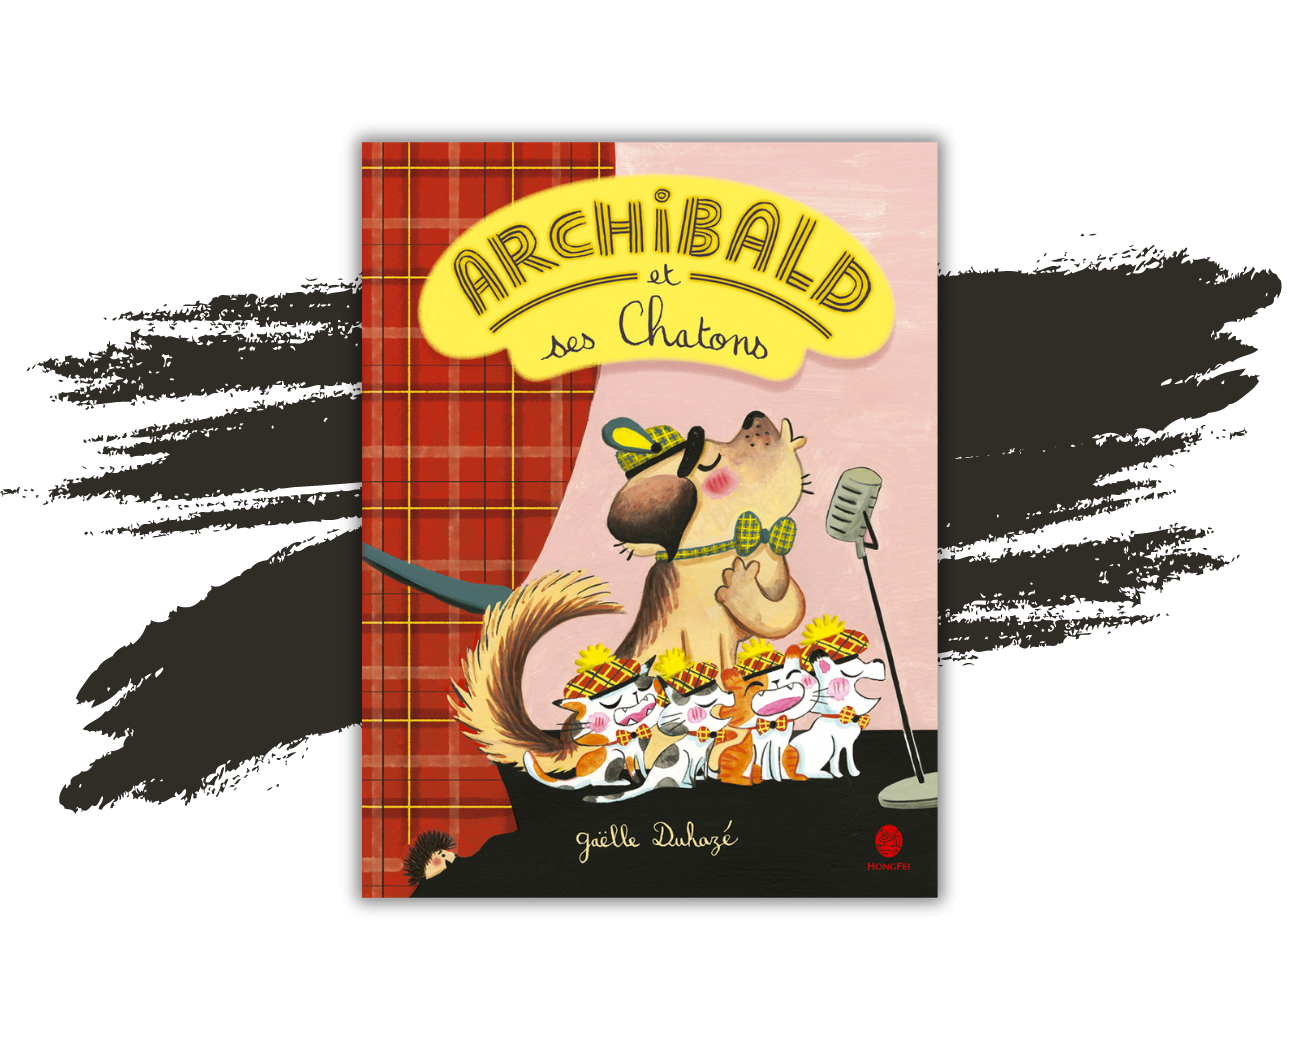 Le livre "Archibald et ses chatons" de Gaëlle Duhazé.